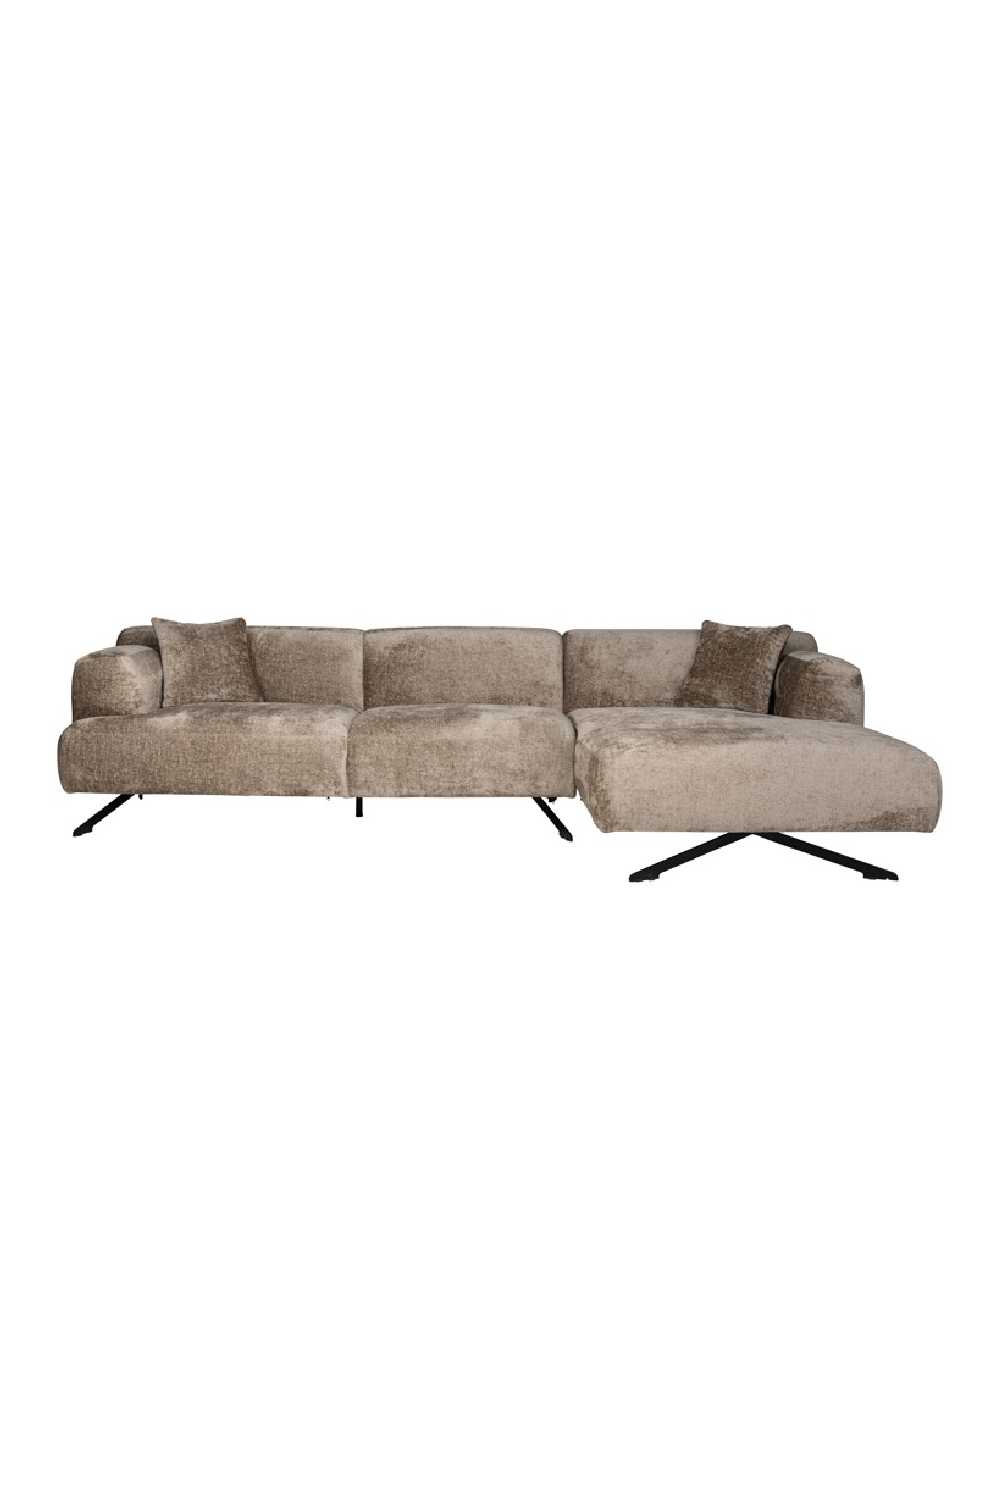 Taupe Chenille Contemporary Sofa | OROA Donovan | Oroa.com